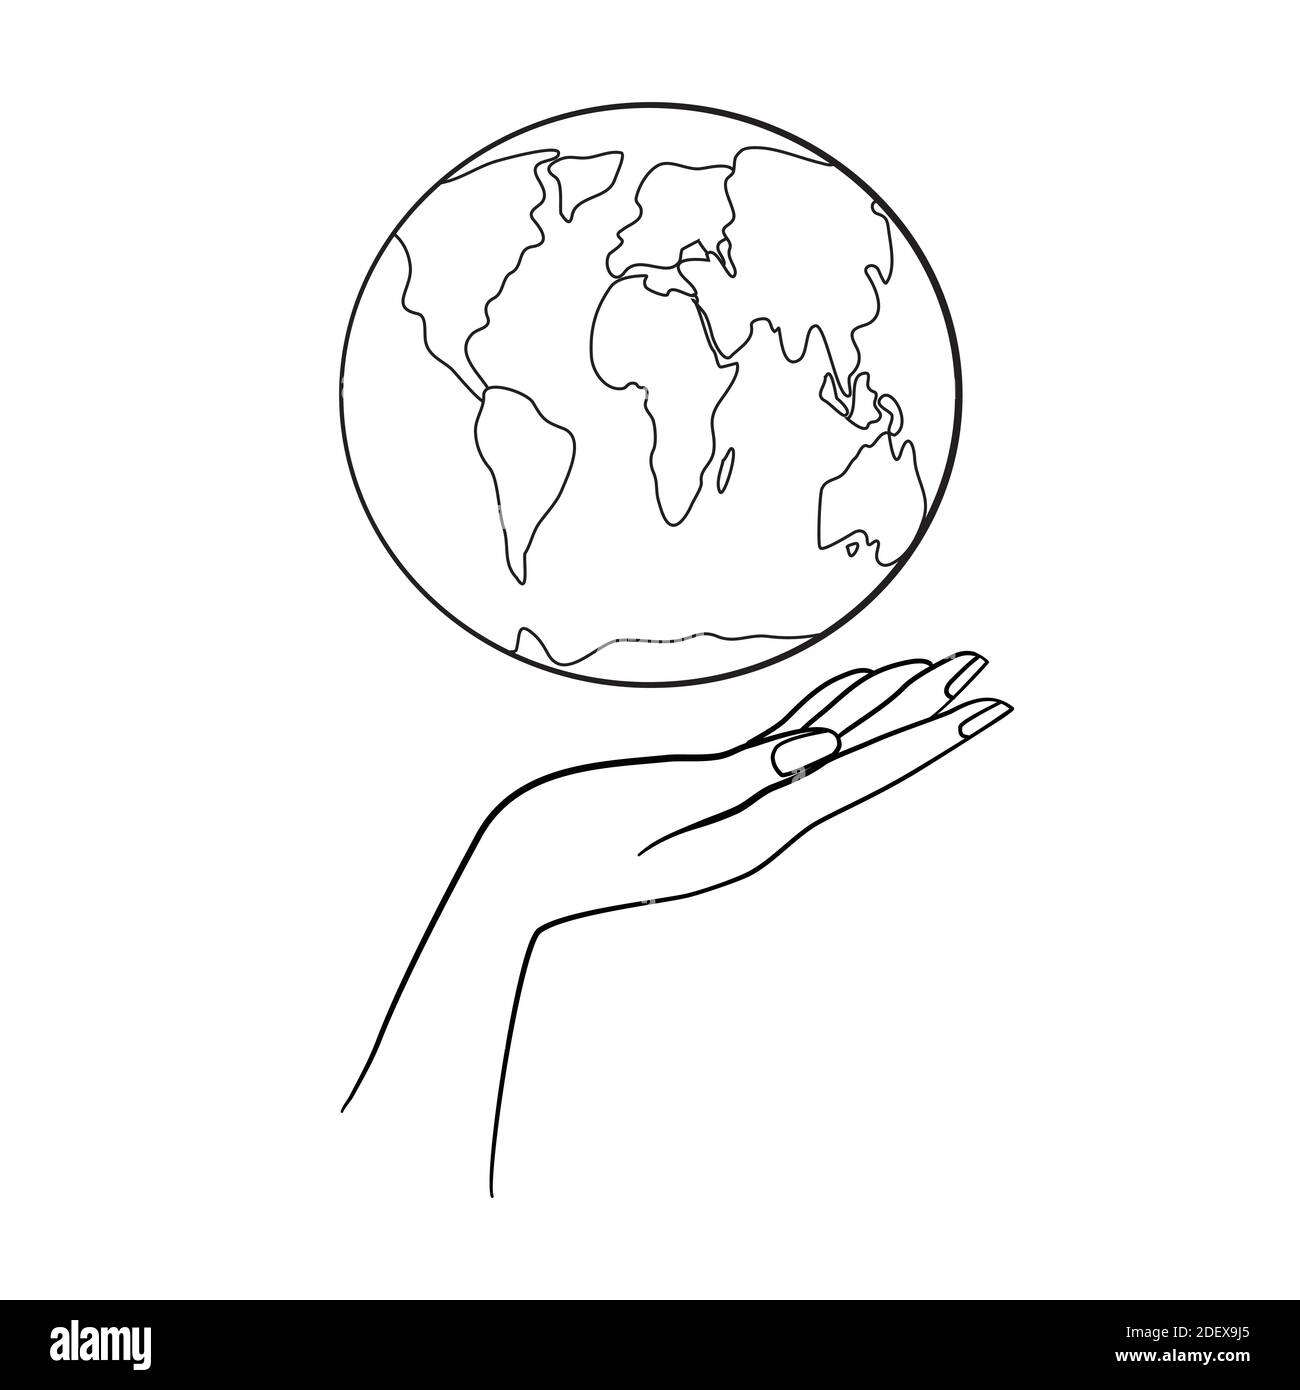 Vektor Hand gezeichnete Erde Tag Konzept Skizze. Menschliche Hände halten Globus Stock Vektor